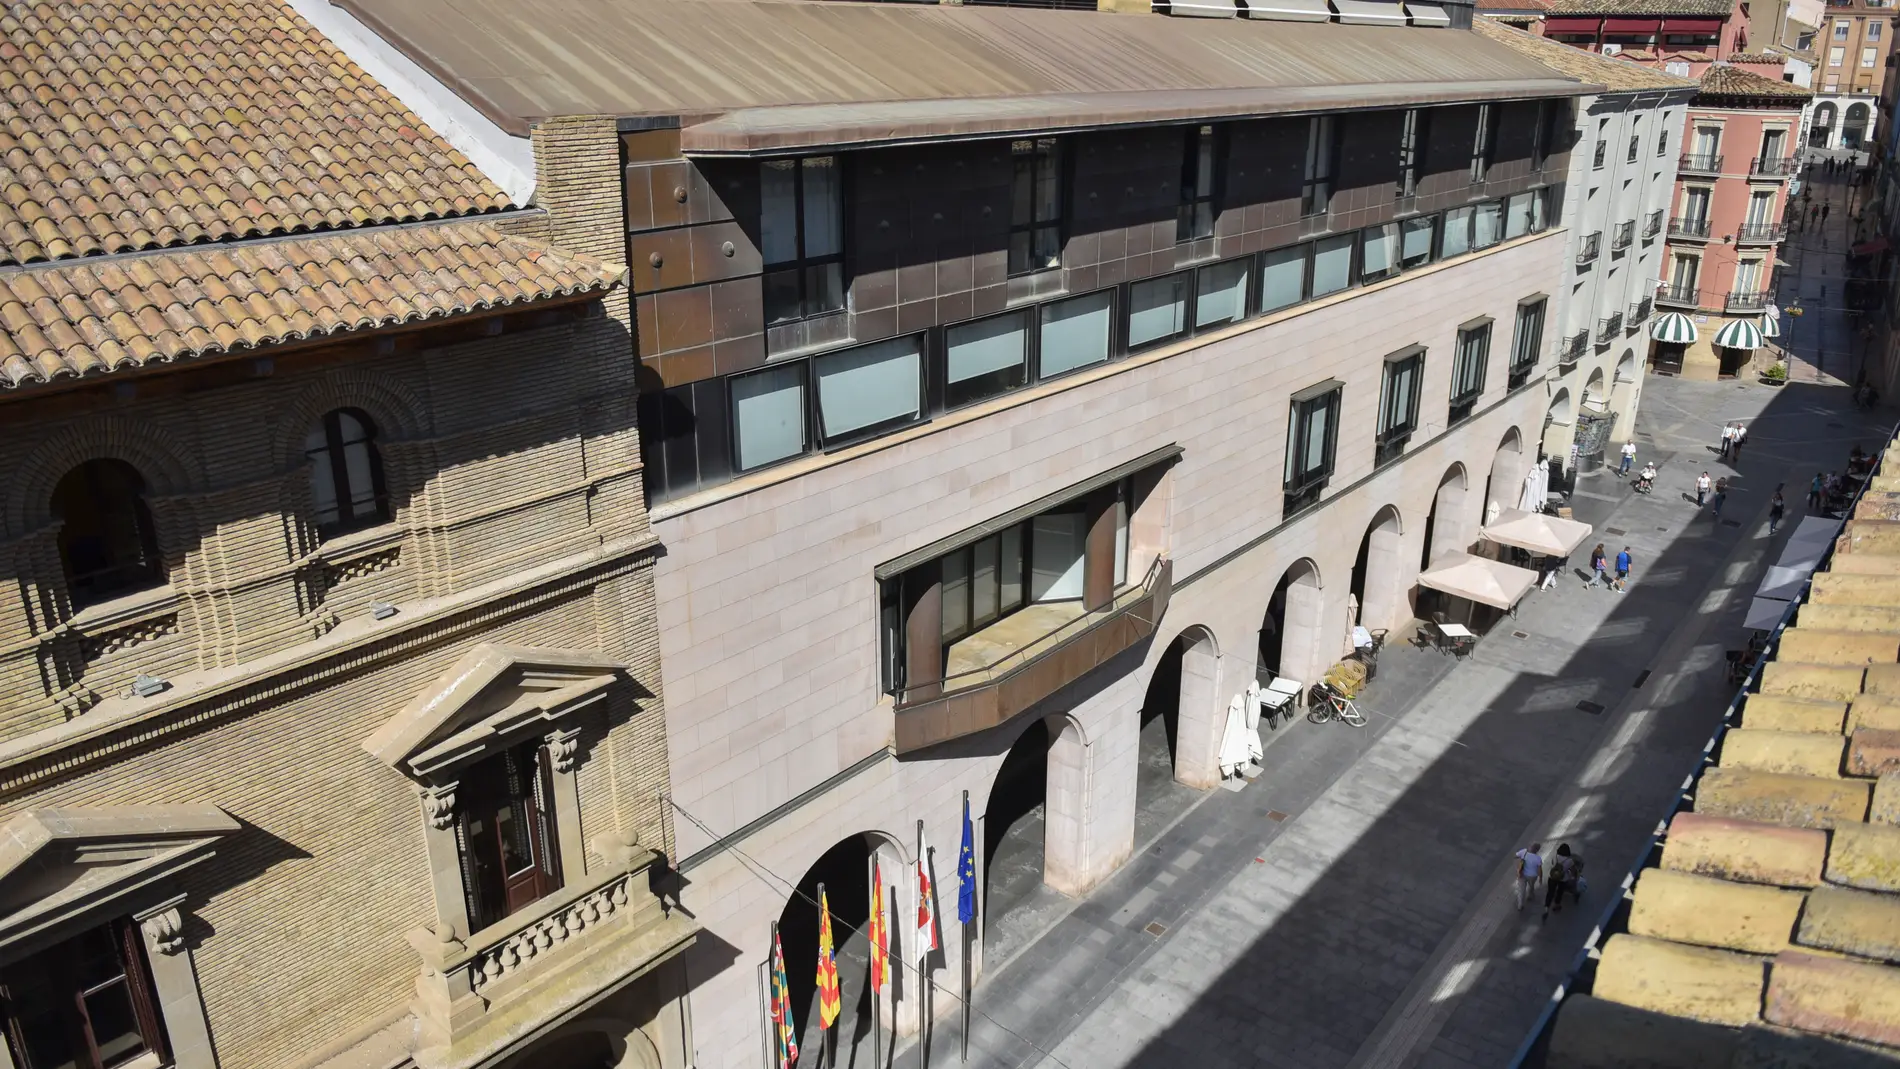 "+ Alto AragON", el plan estratégico marcará una hoja de ruta para impulsar Huesca